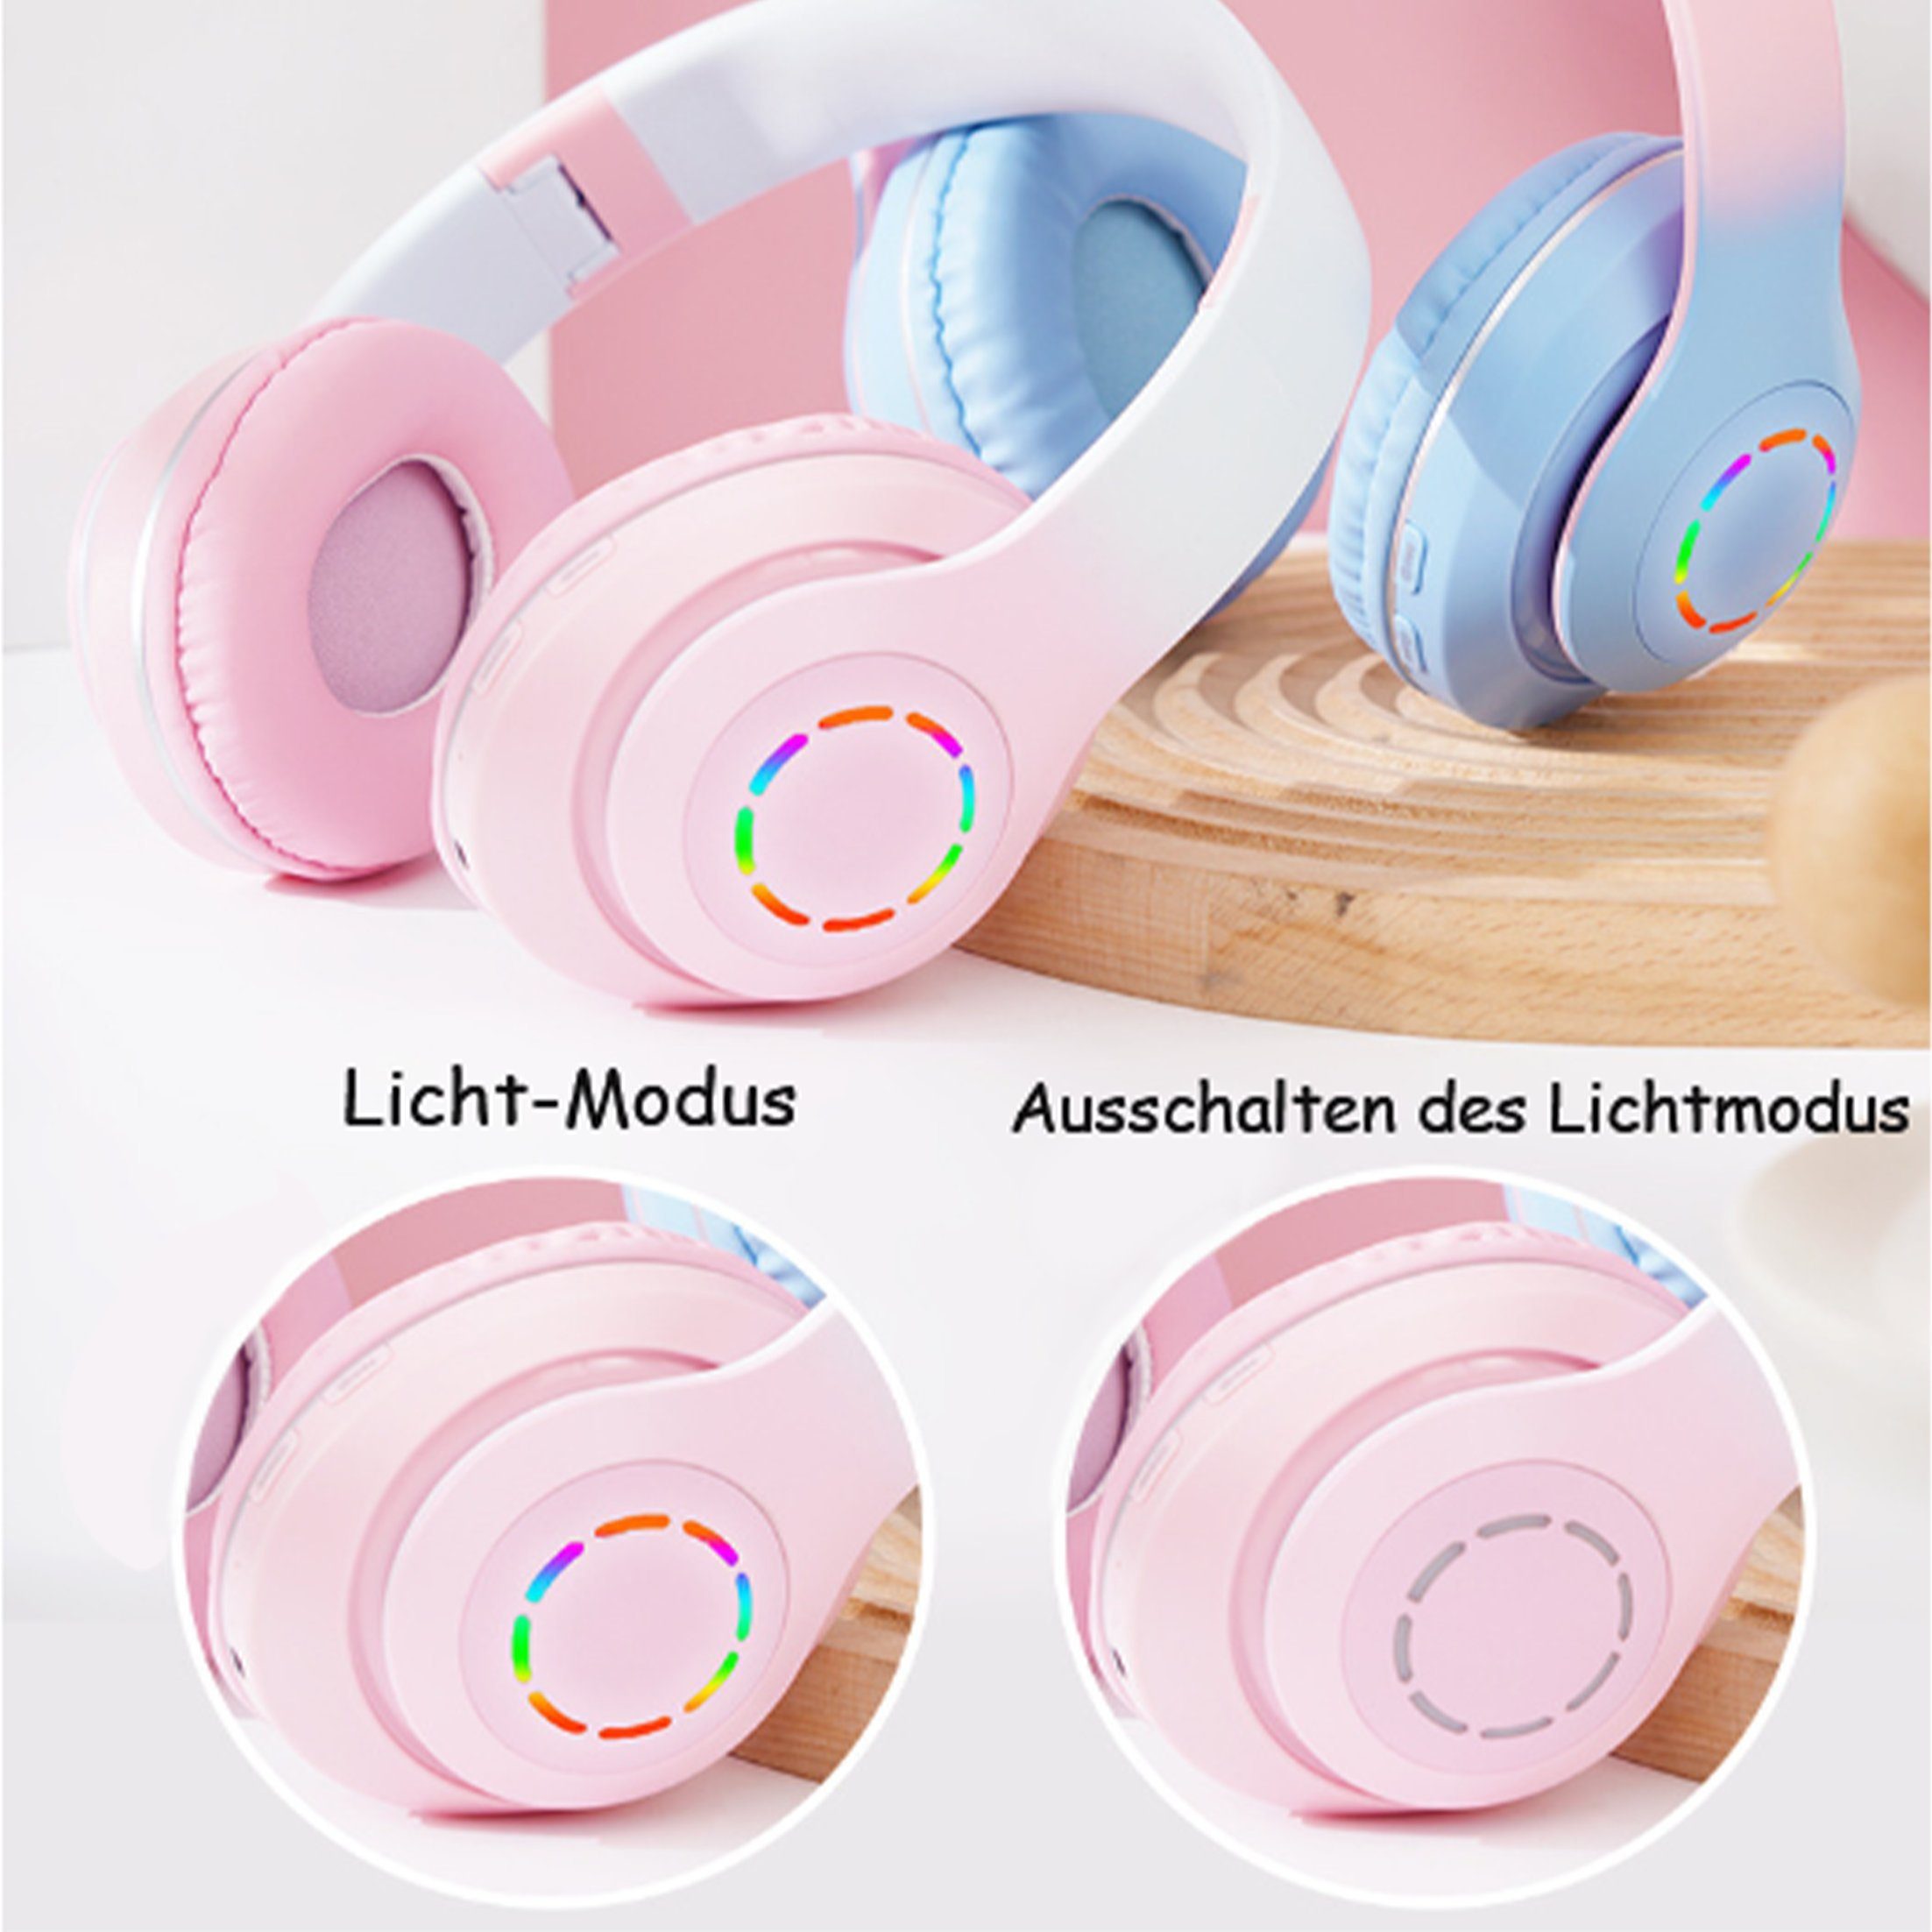 Kabelloses Funk-Kopfhörer Lila Farbverlauf Ear Diida Headset Kopfhörer,Bluetooth-Kopfhörer,Over